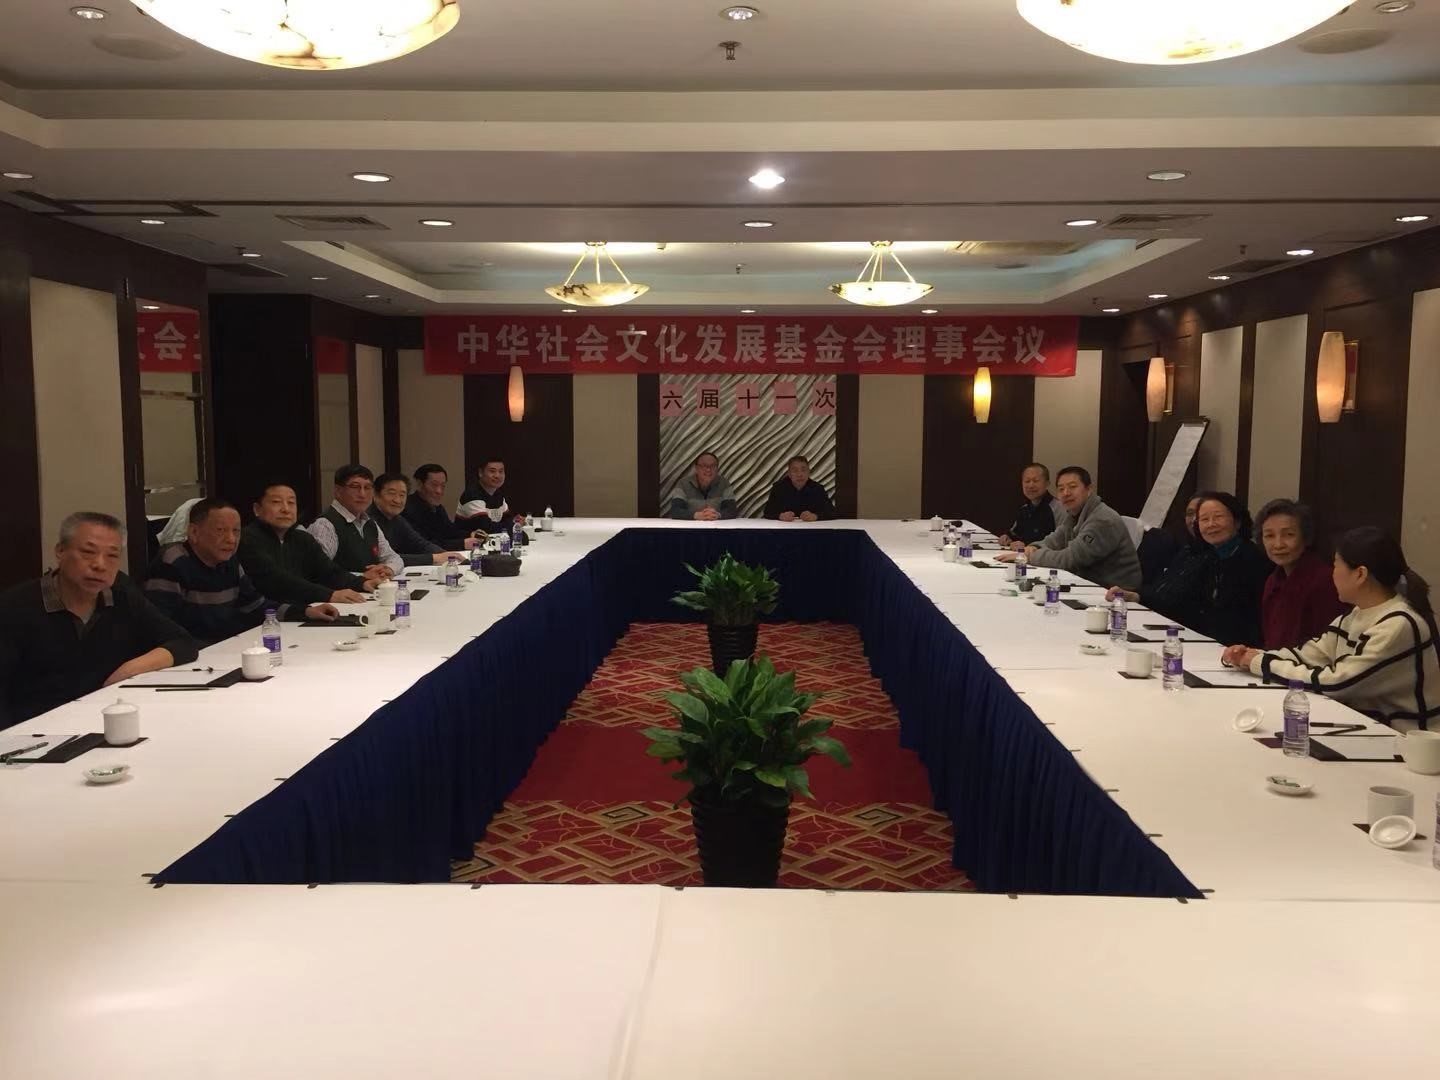 中华社会文化发展基金会第六届第十一次理事会于2019年12月24日上午在北京西单美爵酒店锦绣阁会议室。